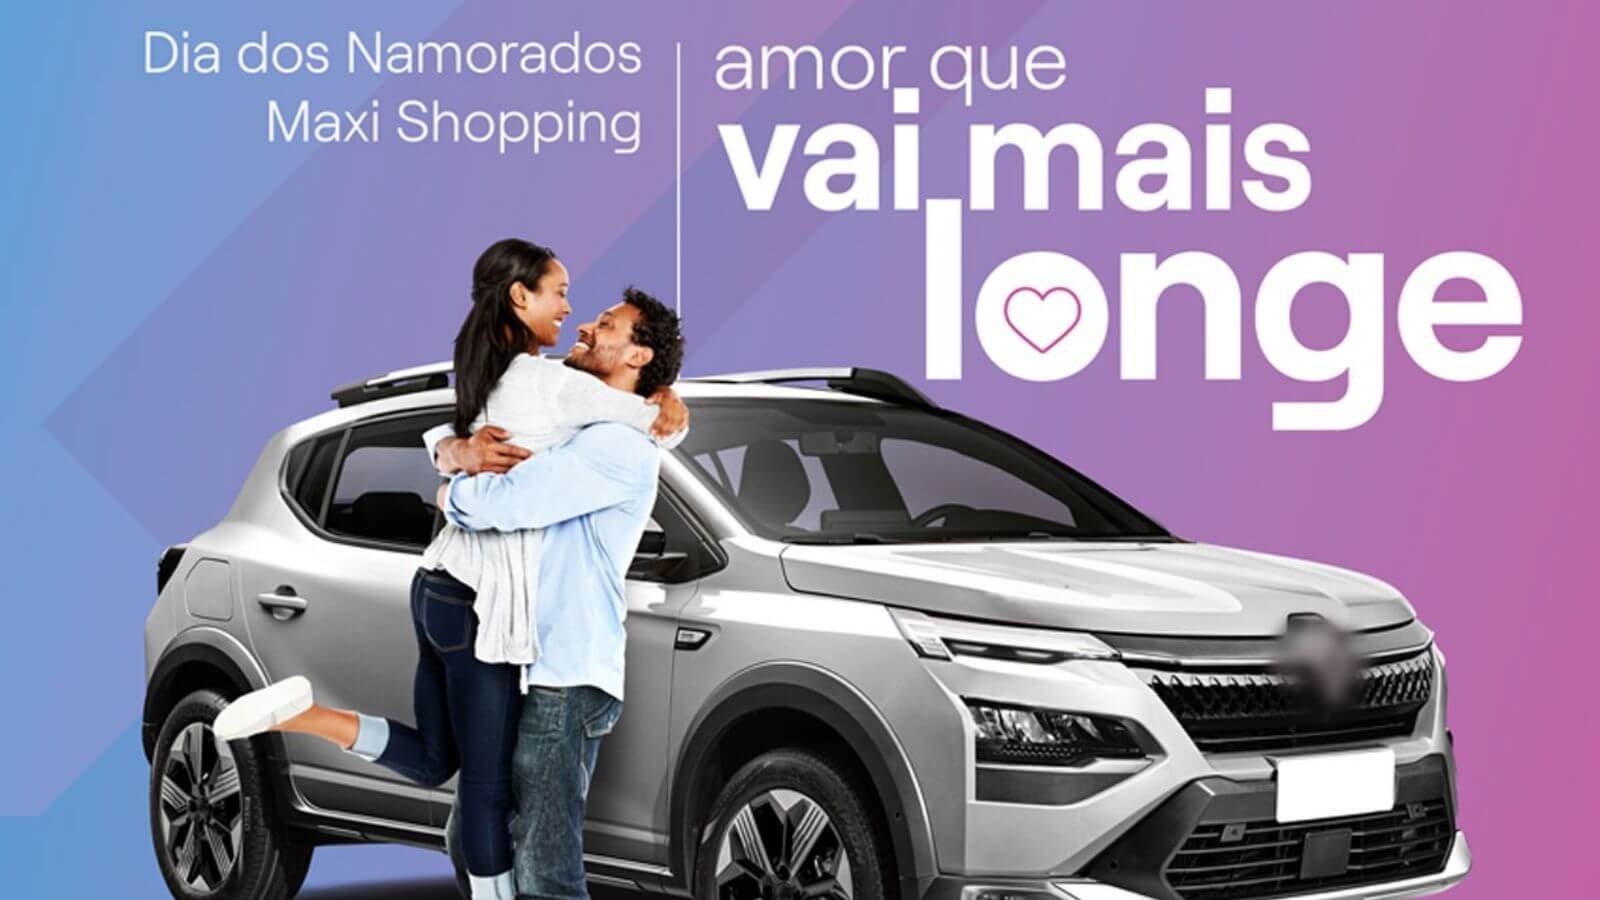 Promoção de Dia dos Namorados do Maxi Shopping Jundiaí, com o slogan "Amor que vai mais longe", mostrando um casal abraçado e um carro ao fundo.